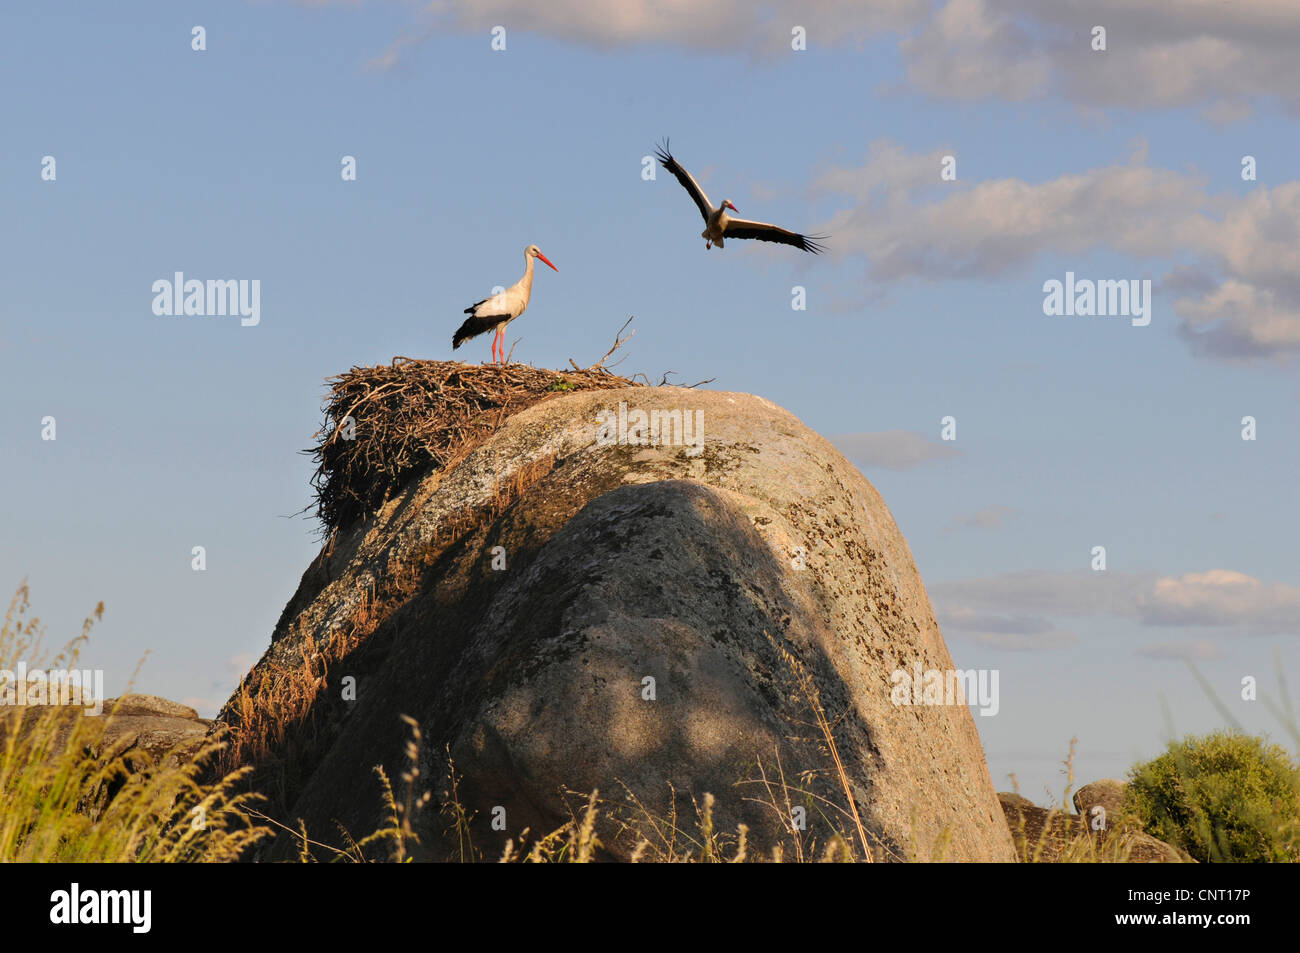 Cicogna bianca (Ciconia ciconia), flying stork con nido su roccia, Spagna Estremadura, Laguna del Lavadero, los Barruecos, Malpartida De Caceres Foto Stock